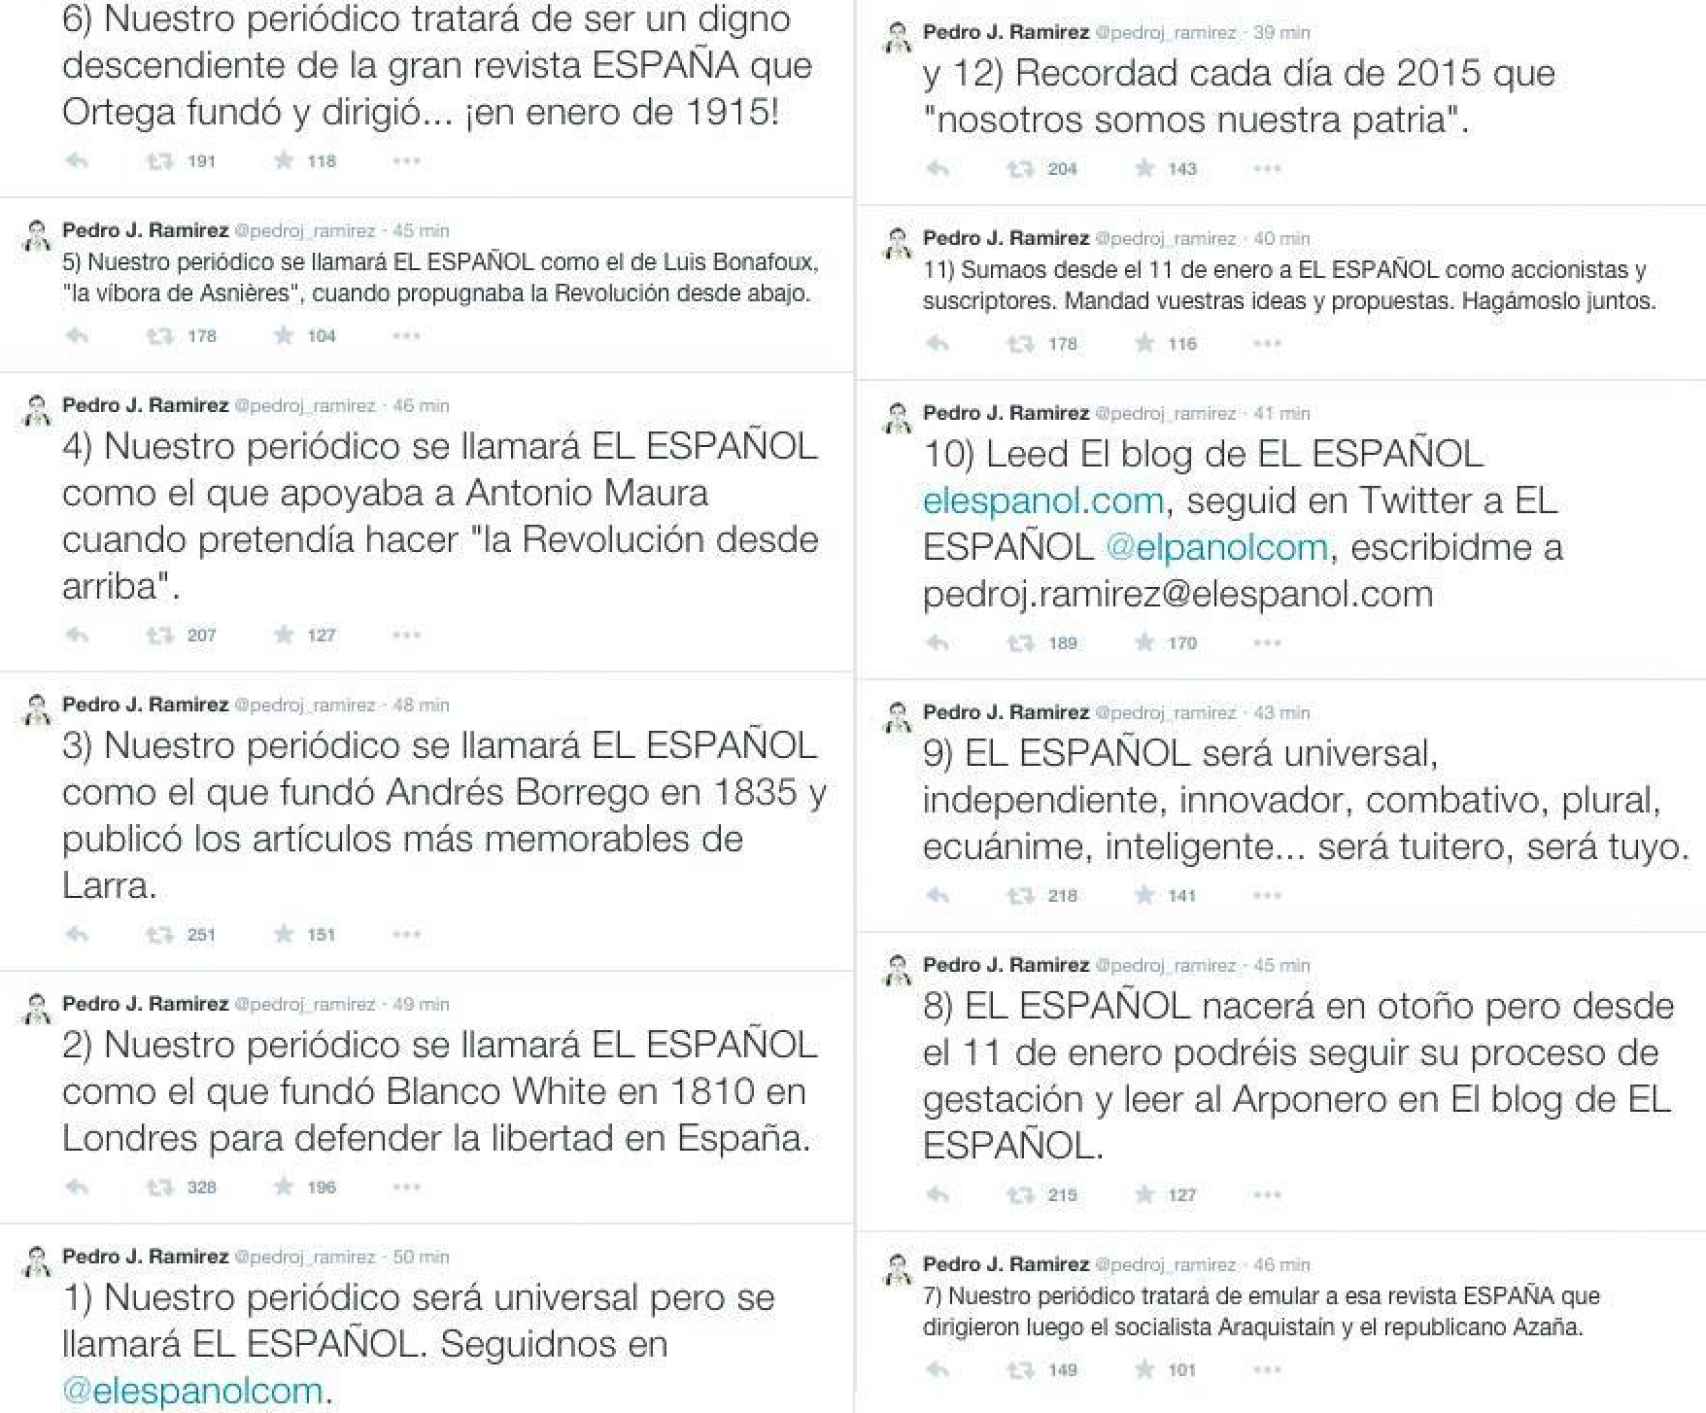 Principios fundacionales de EL ESPAÑOL publicados en Twitter por Pedro J. Ramírez el 1 de enero de 2015.